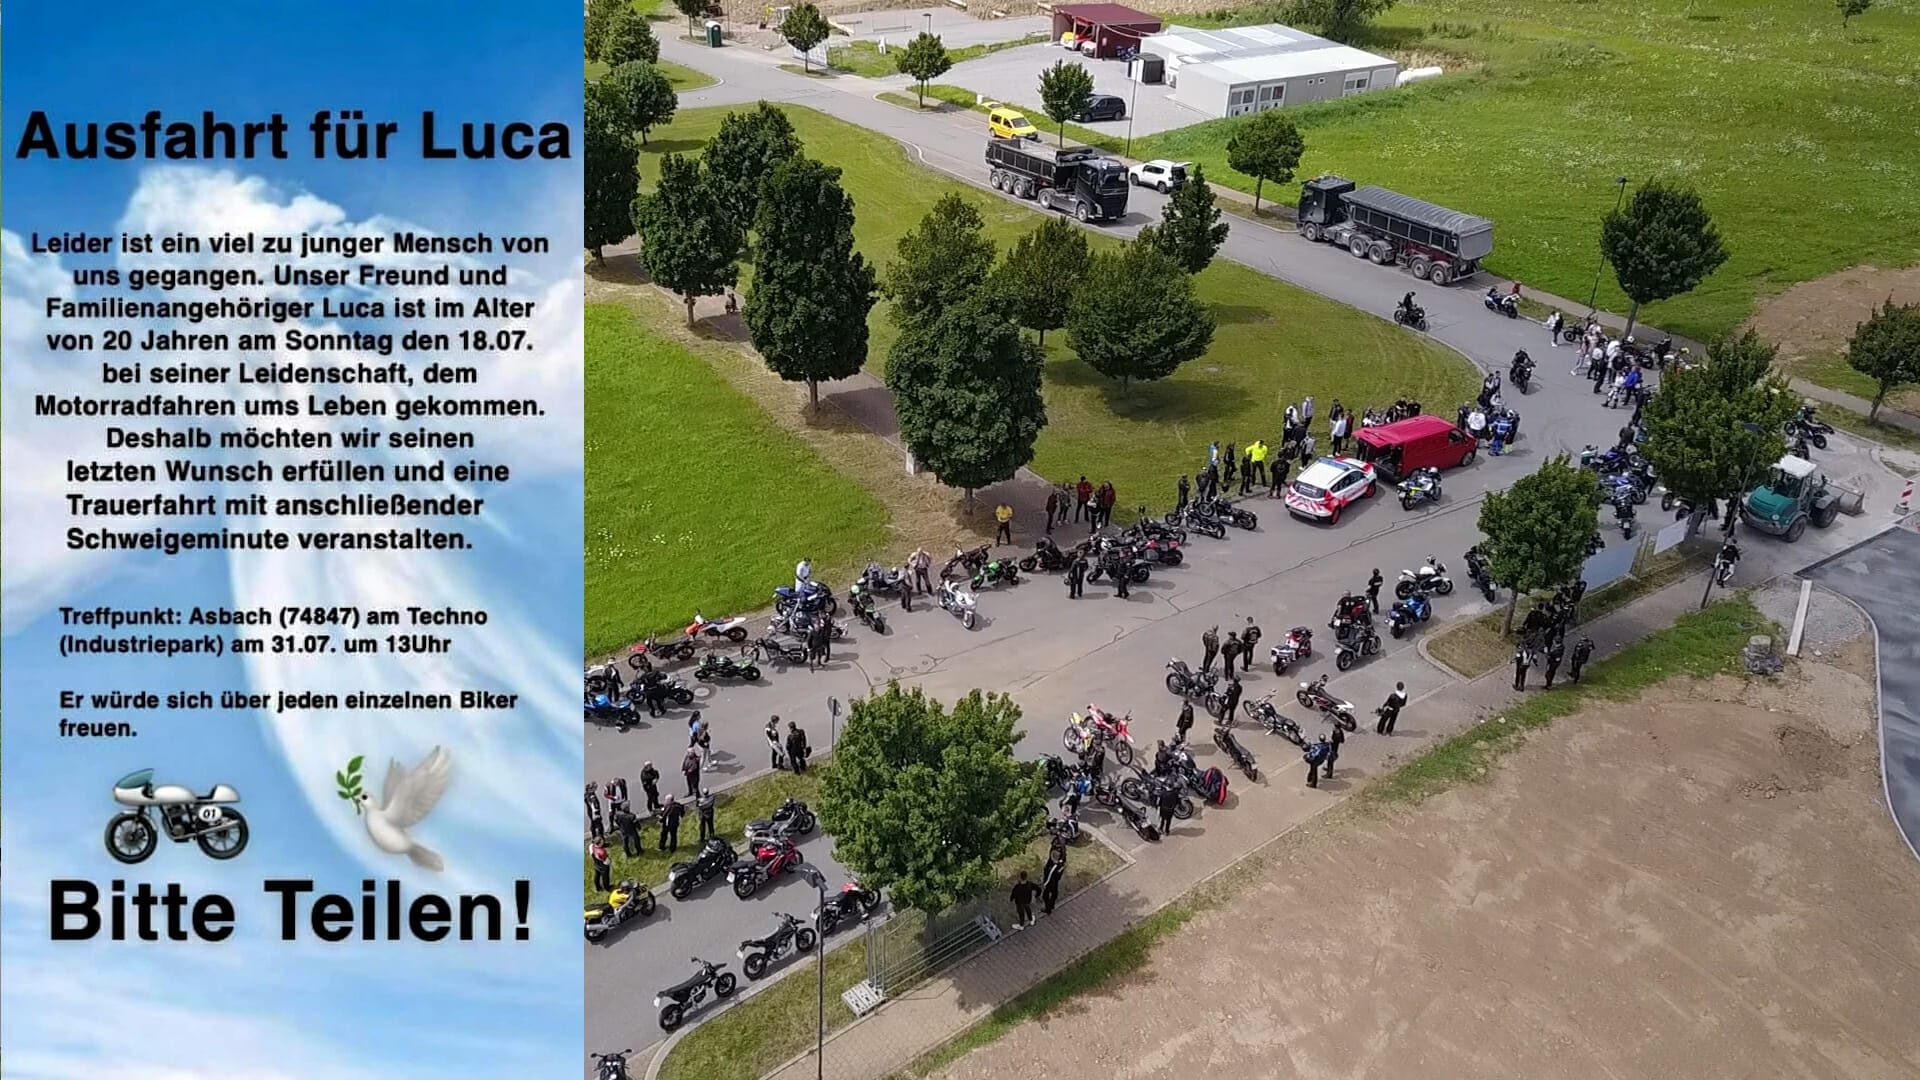 Trauerfahrt für Luca
- auch in der MOTORRAD NACHRICHTEN APP